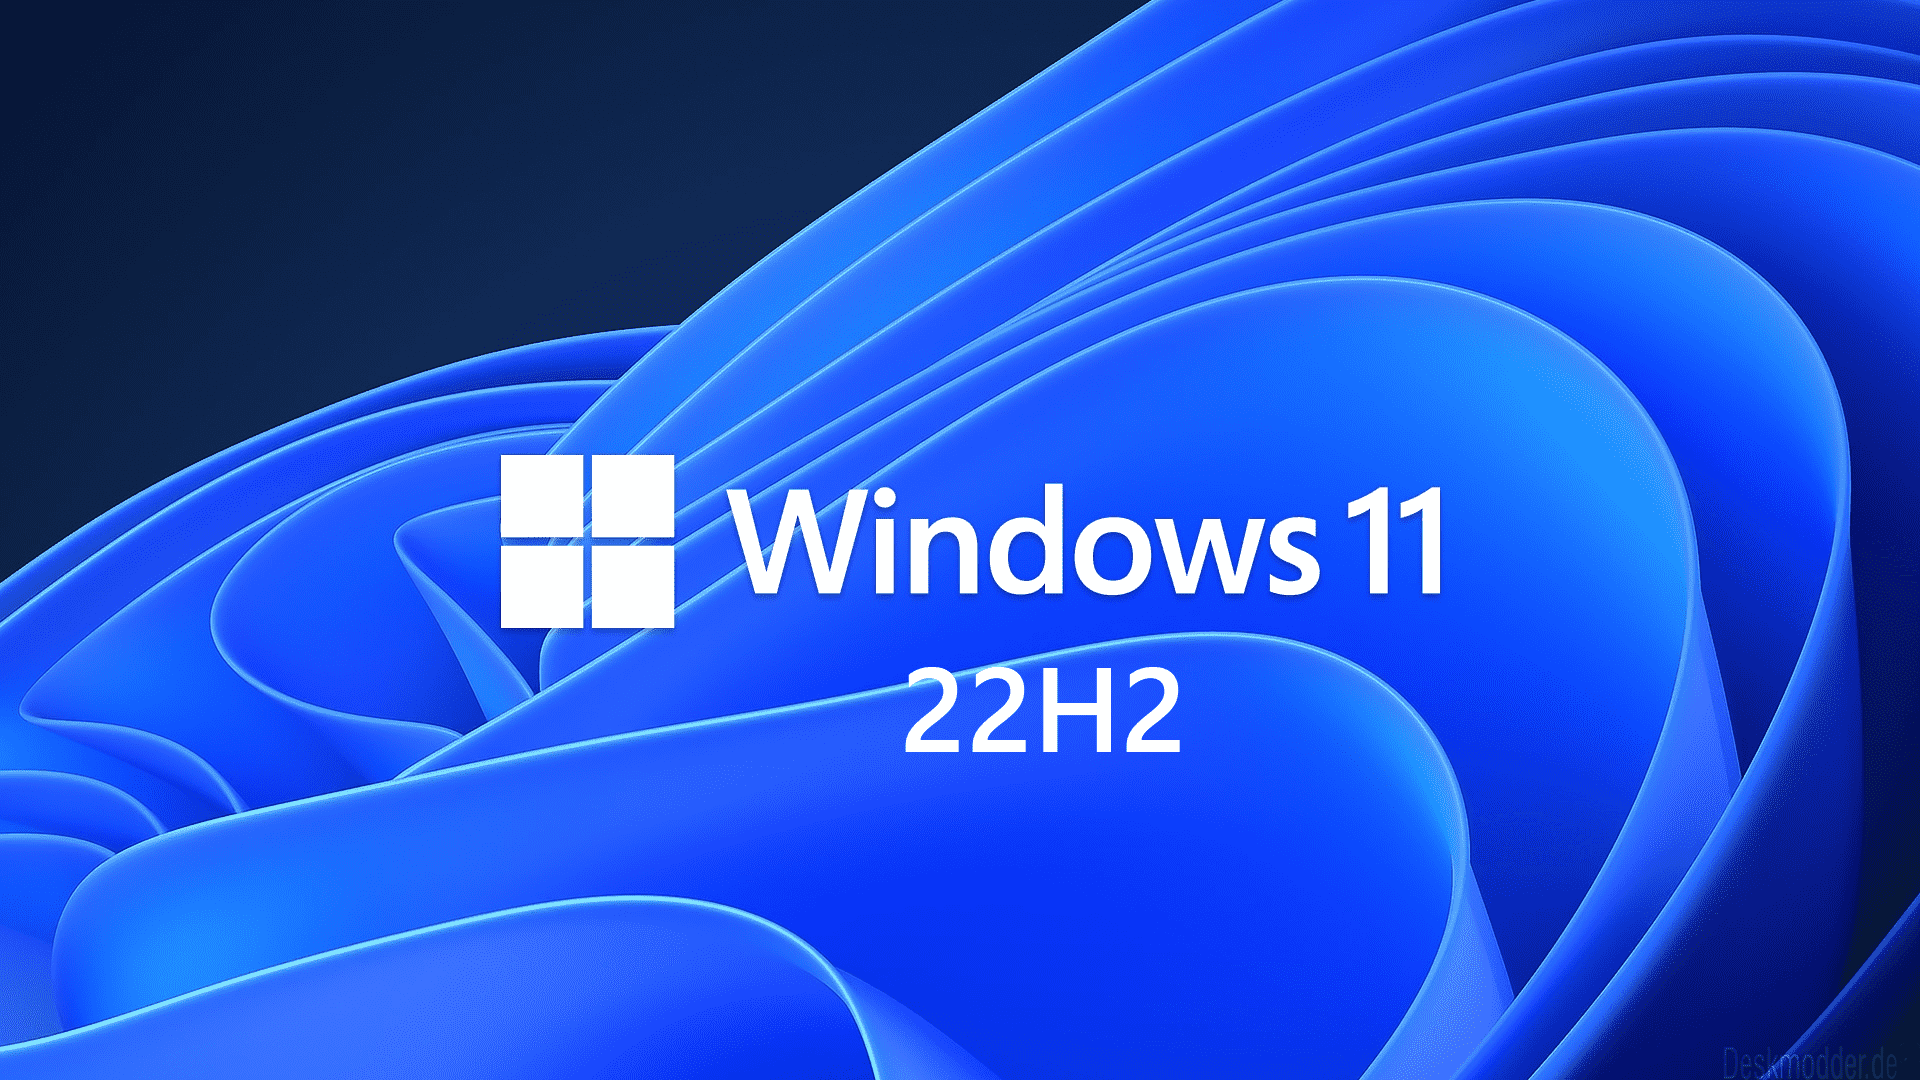 Windows 11 Upgrade 22H2 ist jetzt verfügbar